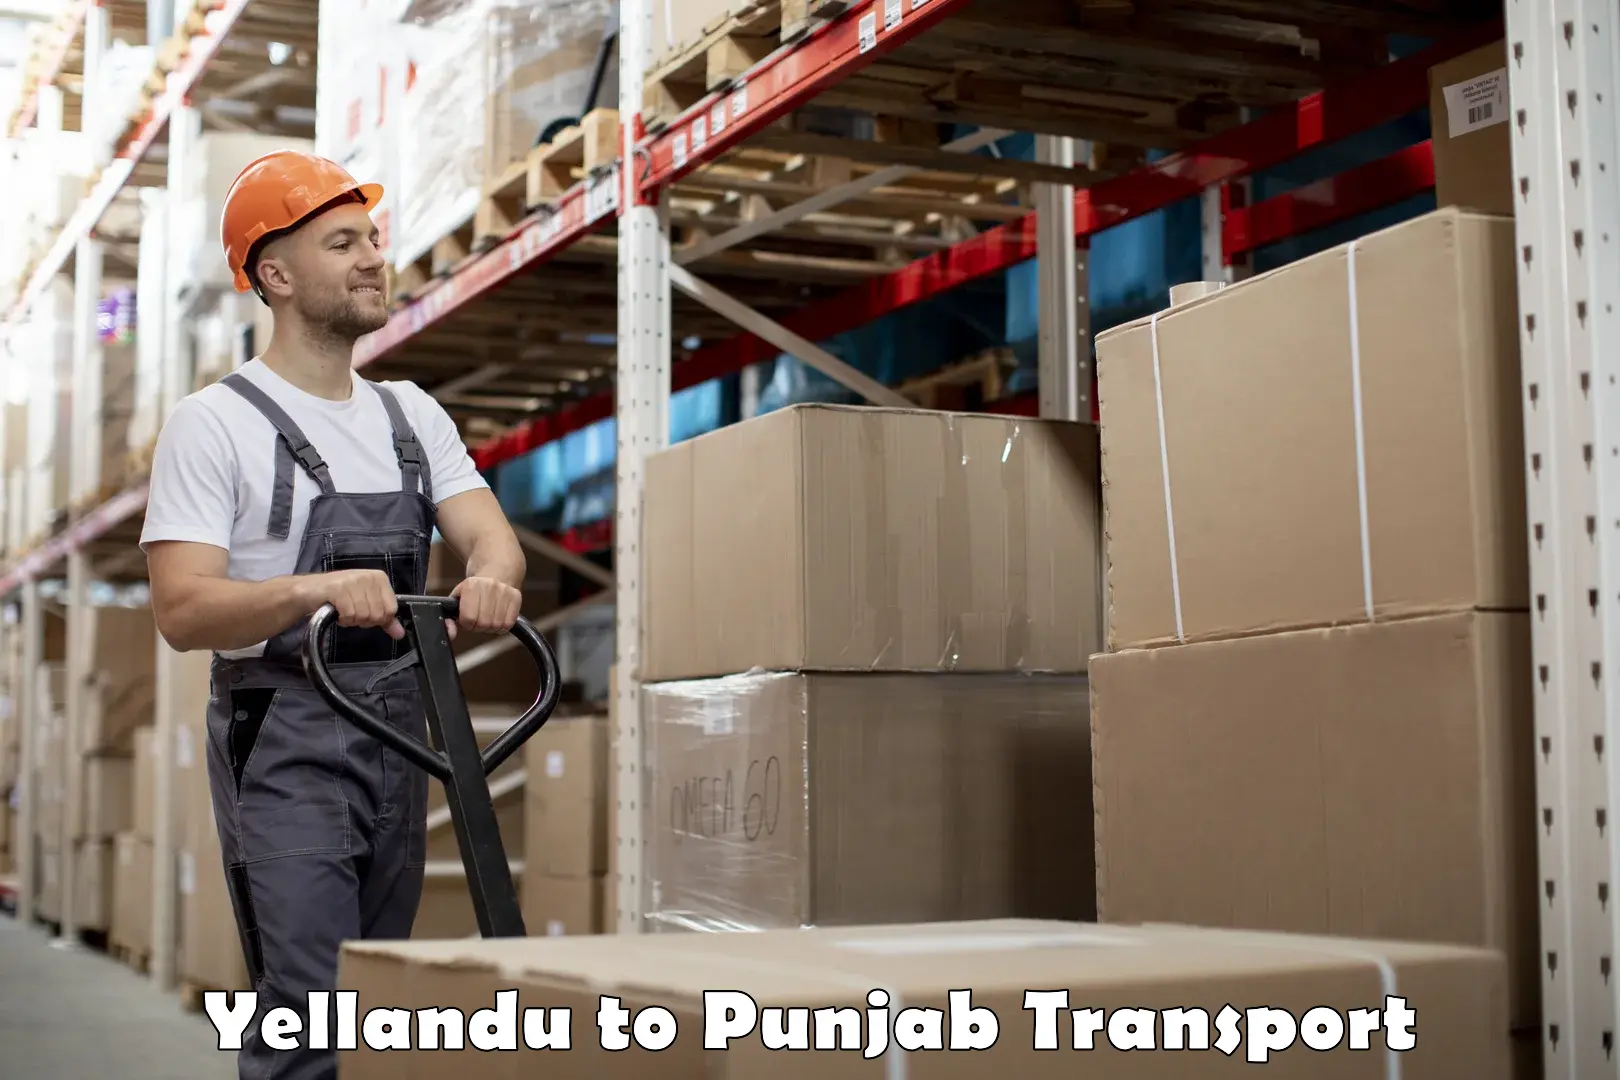 Nearest transport service Yellandu to Punjab